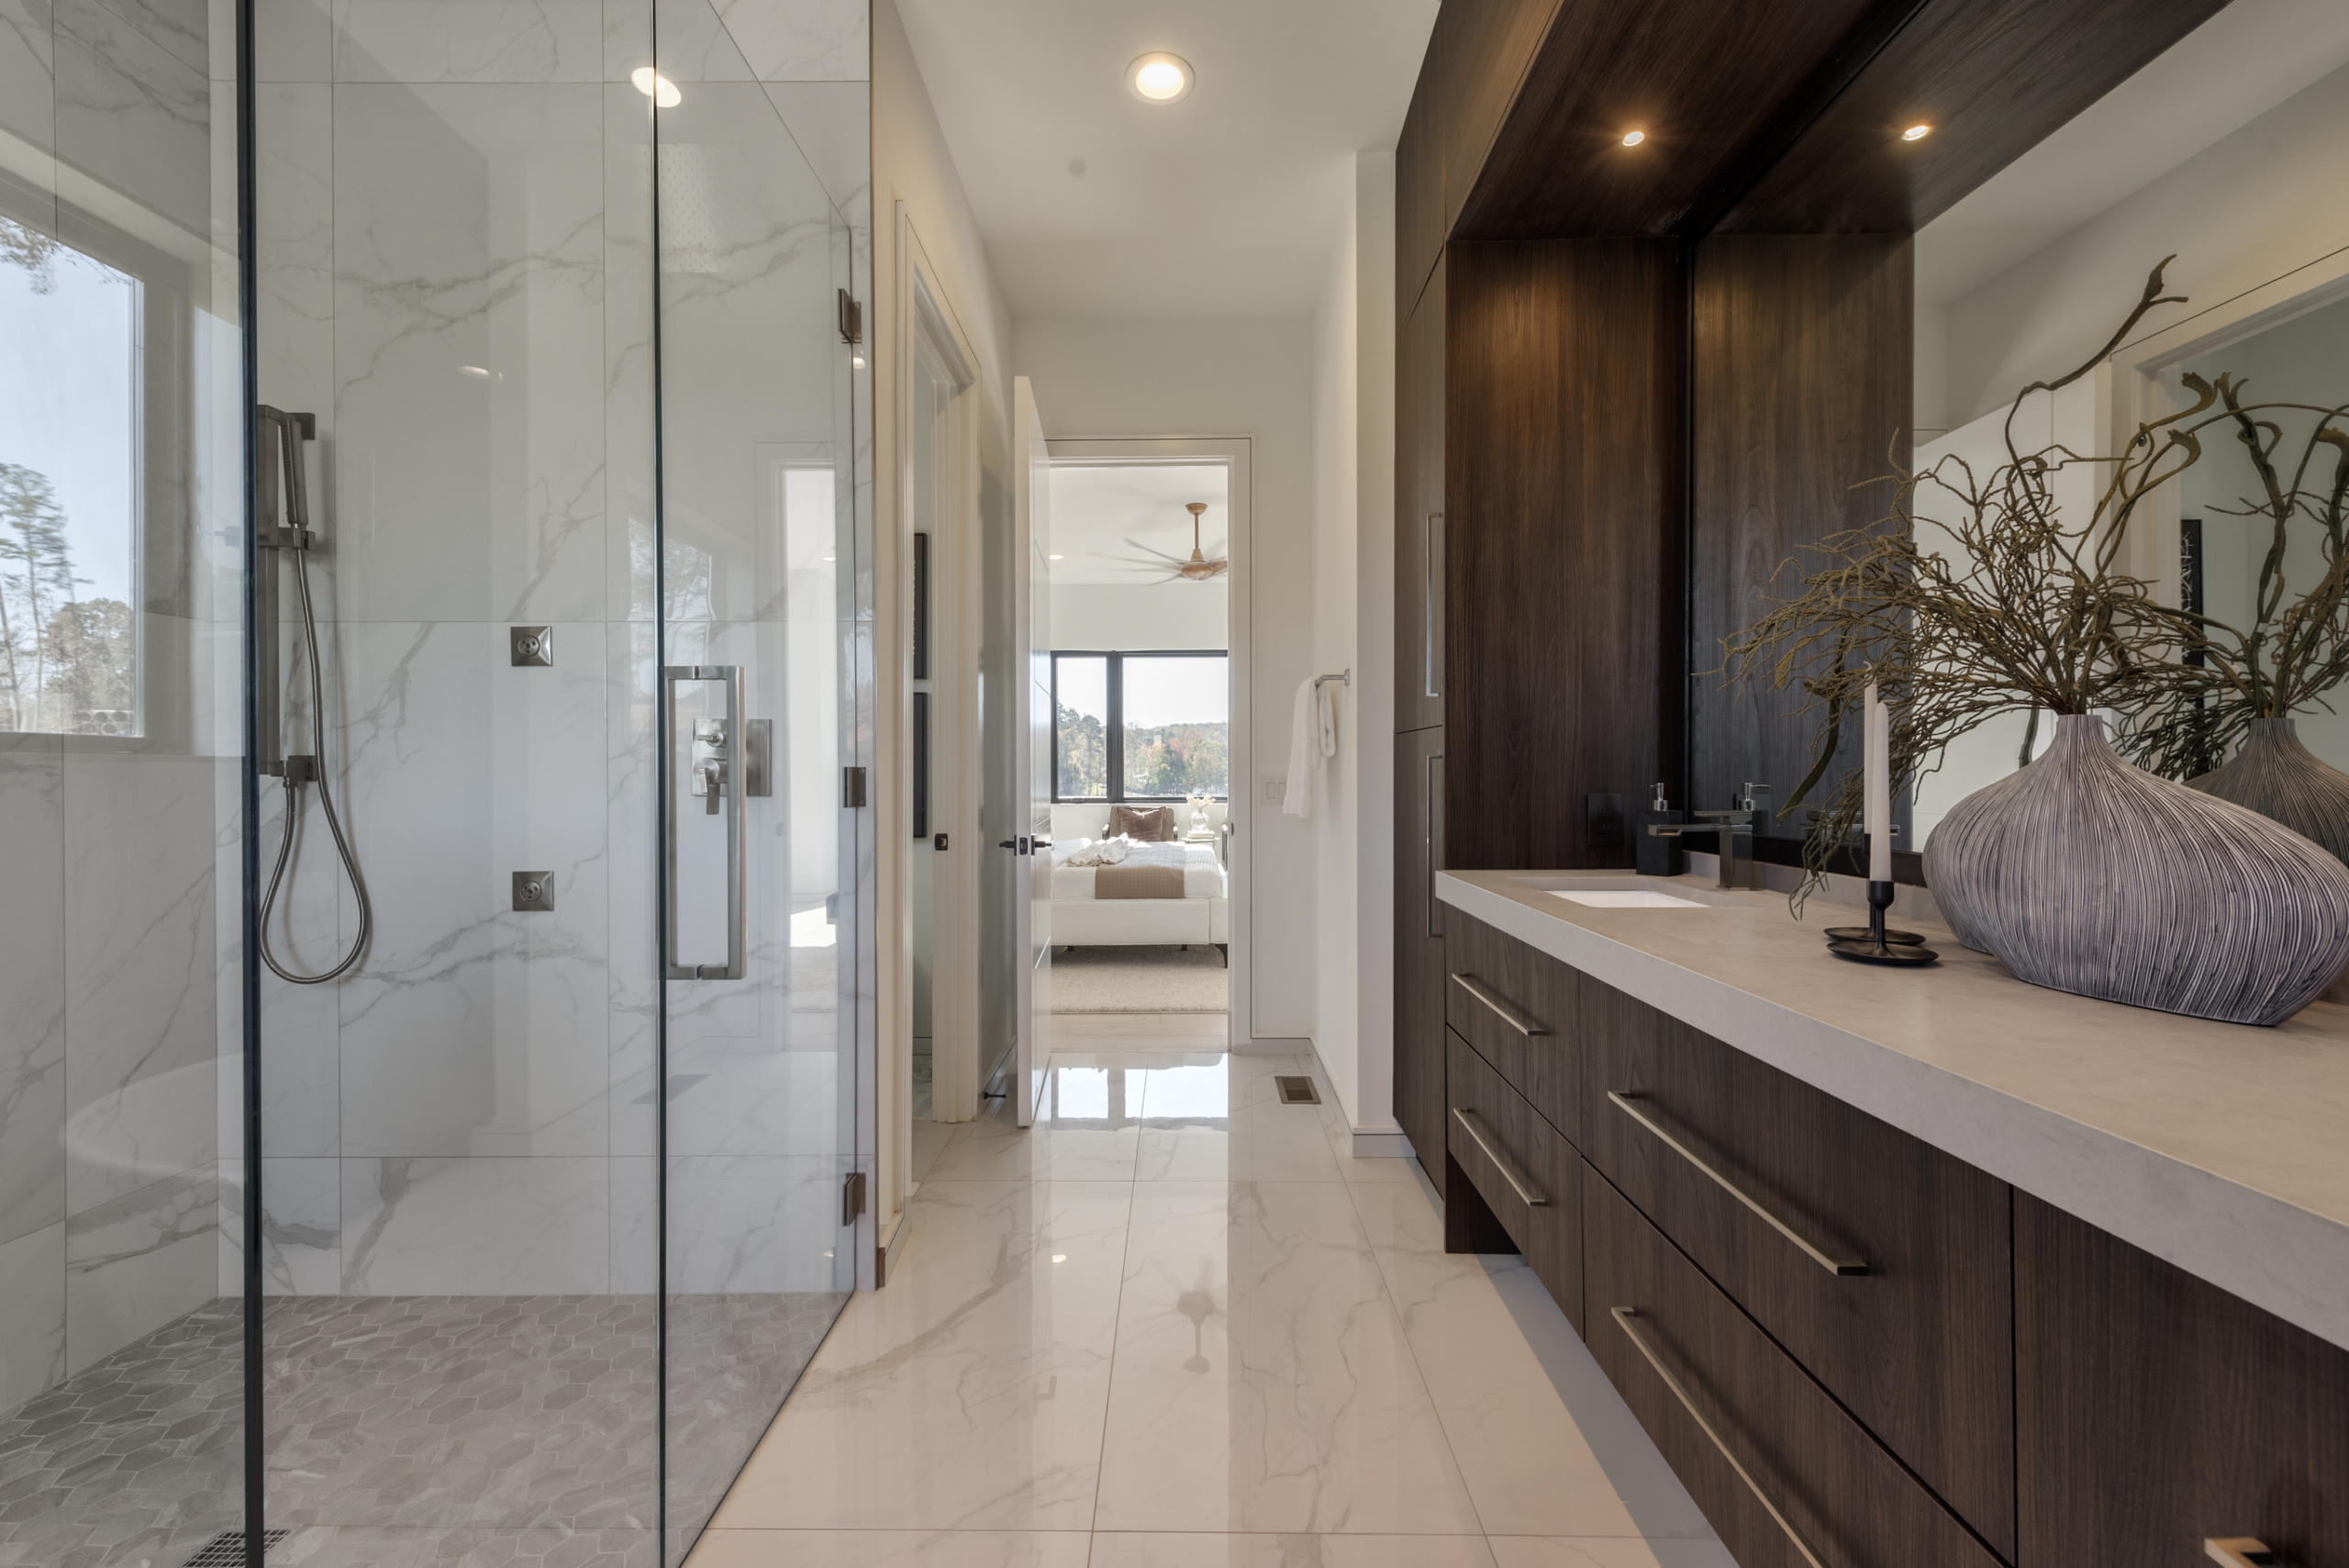 Modern bedroom bathroom with custom large floor to ceiling dark wood double vanity leading into bedroom